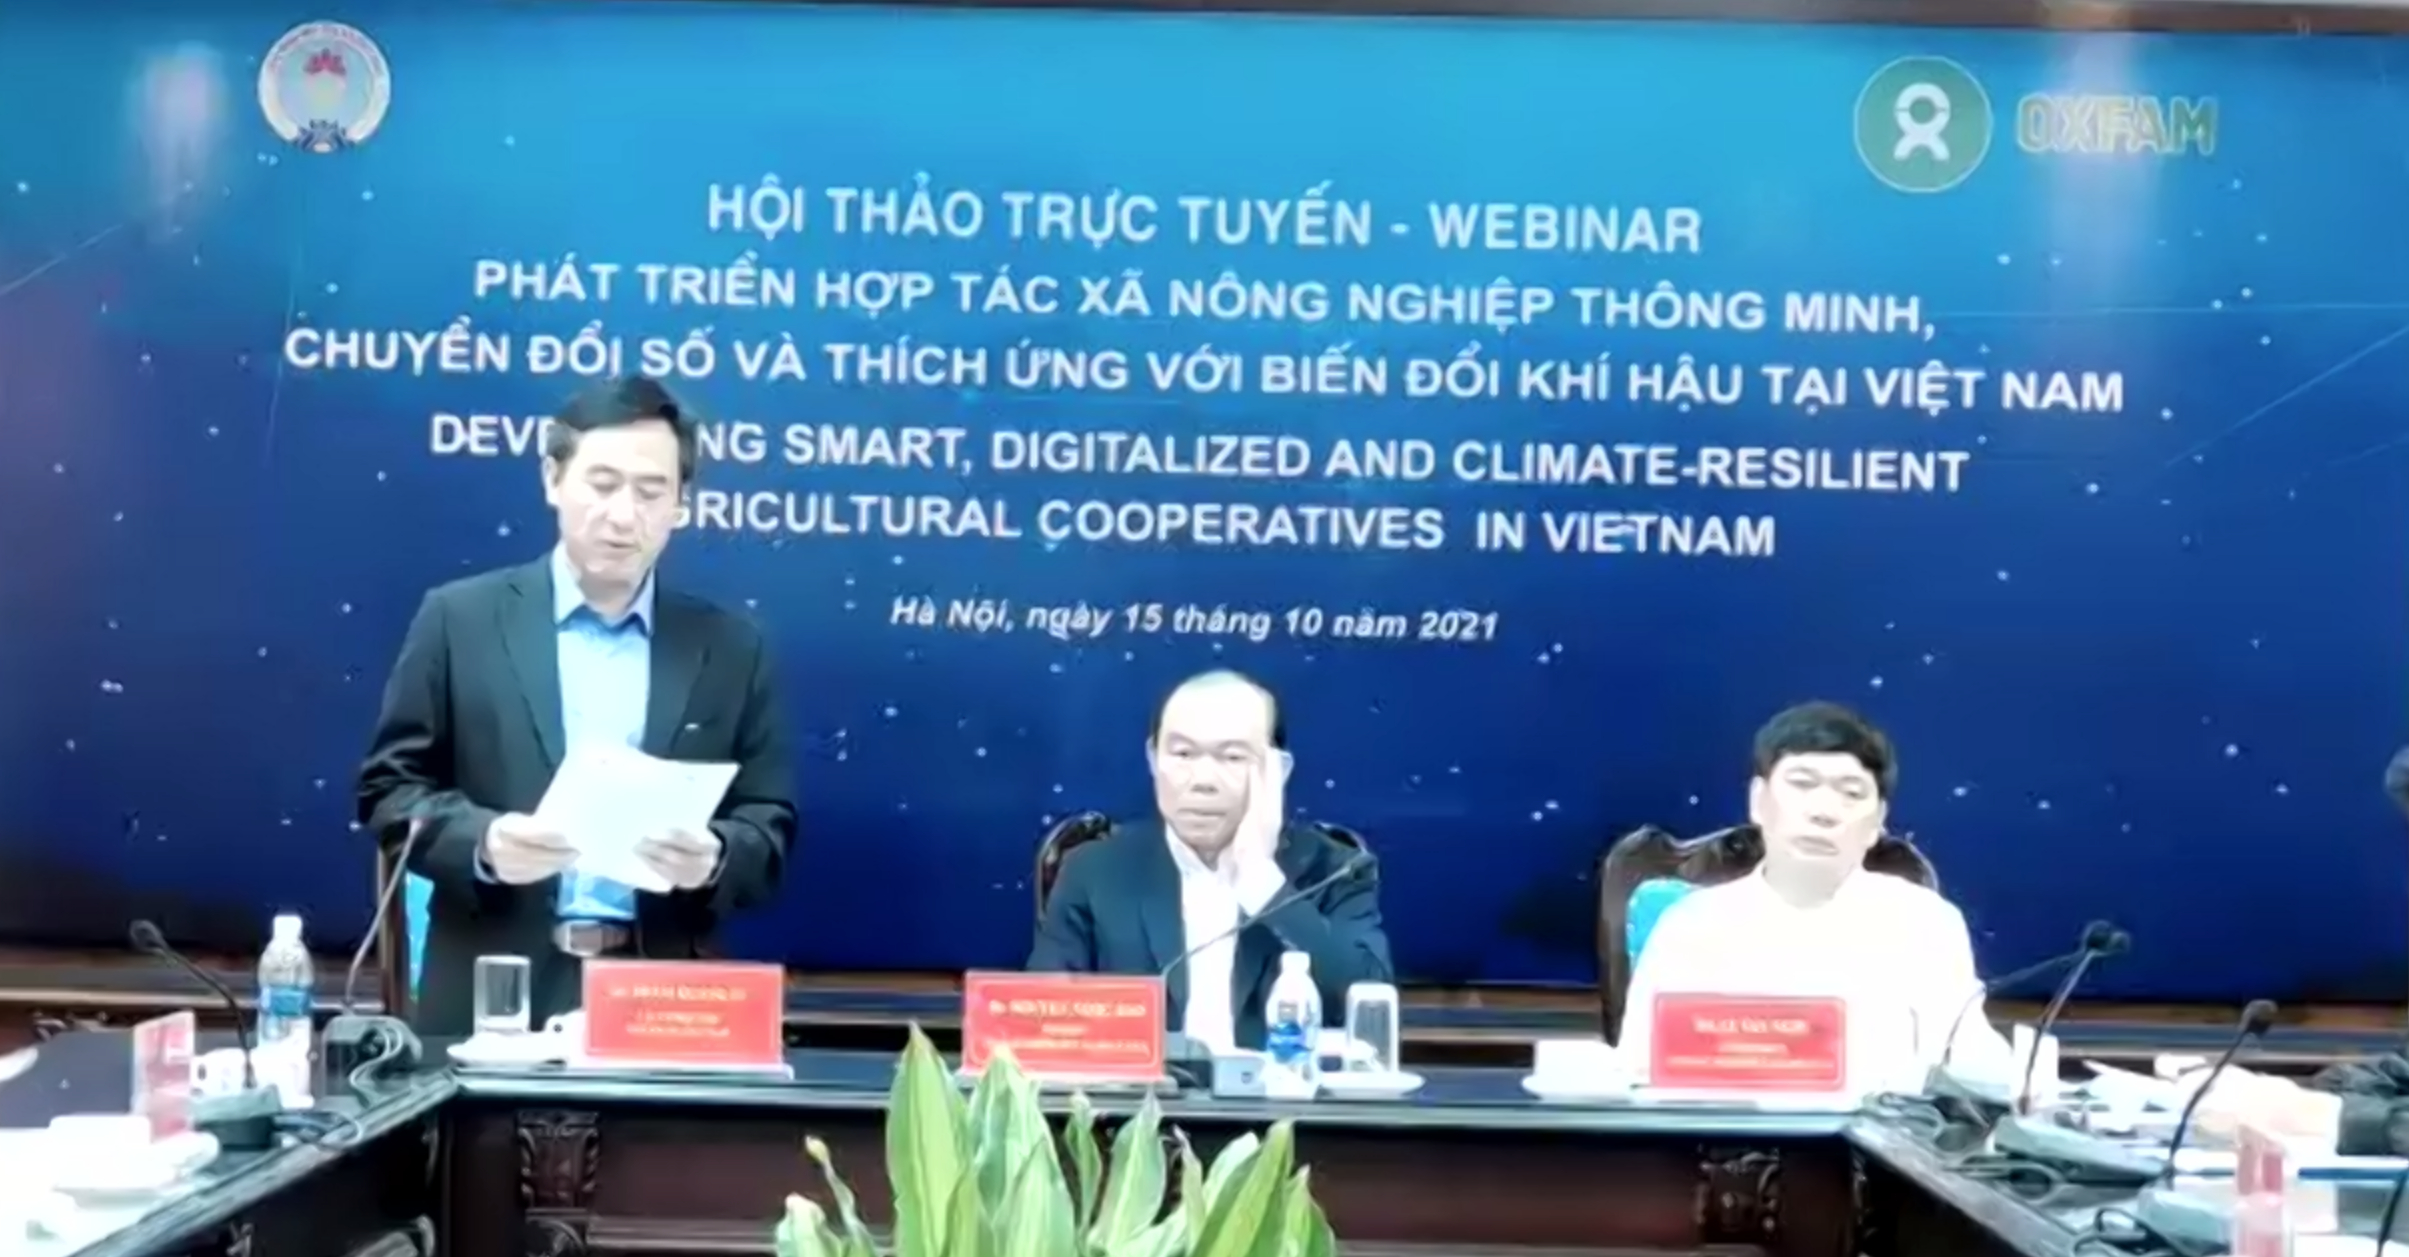 TS. Phạm Quang Tú, Phó Giám đốc Tổ chức Oxfam tại Việt Nam phát biểu khai mạc hội thảo.